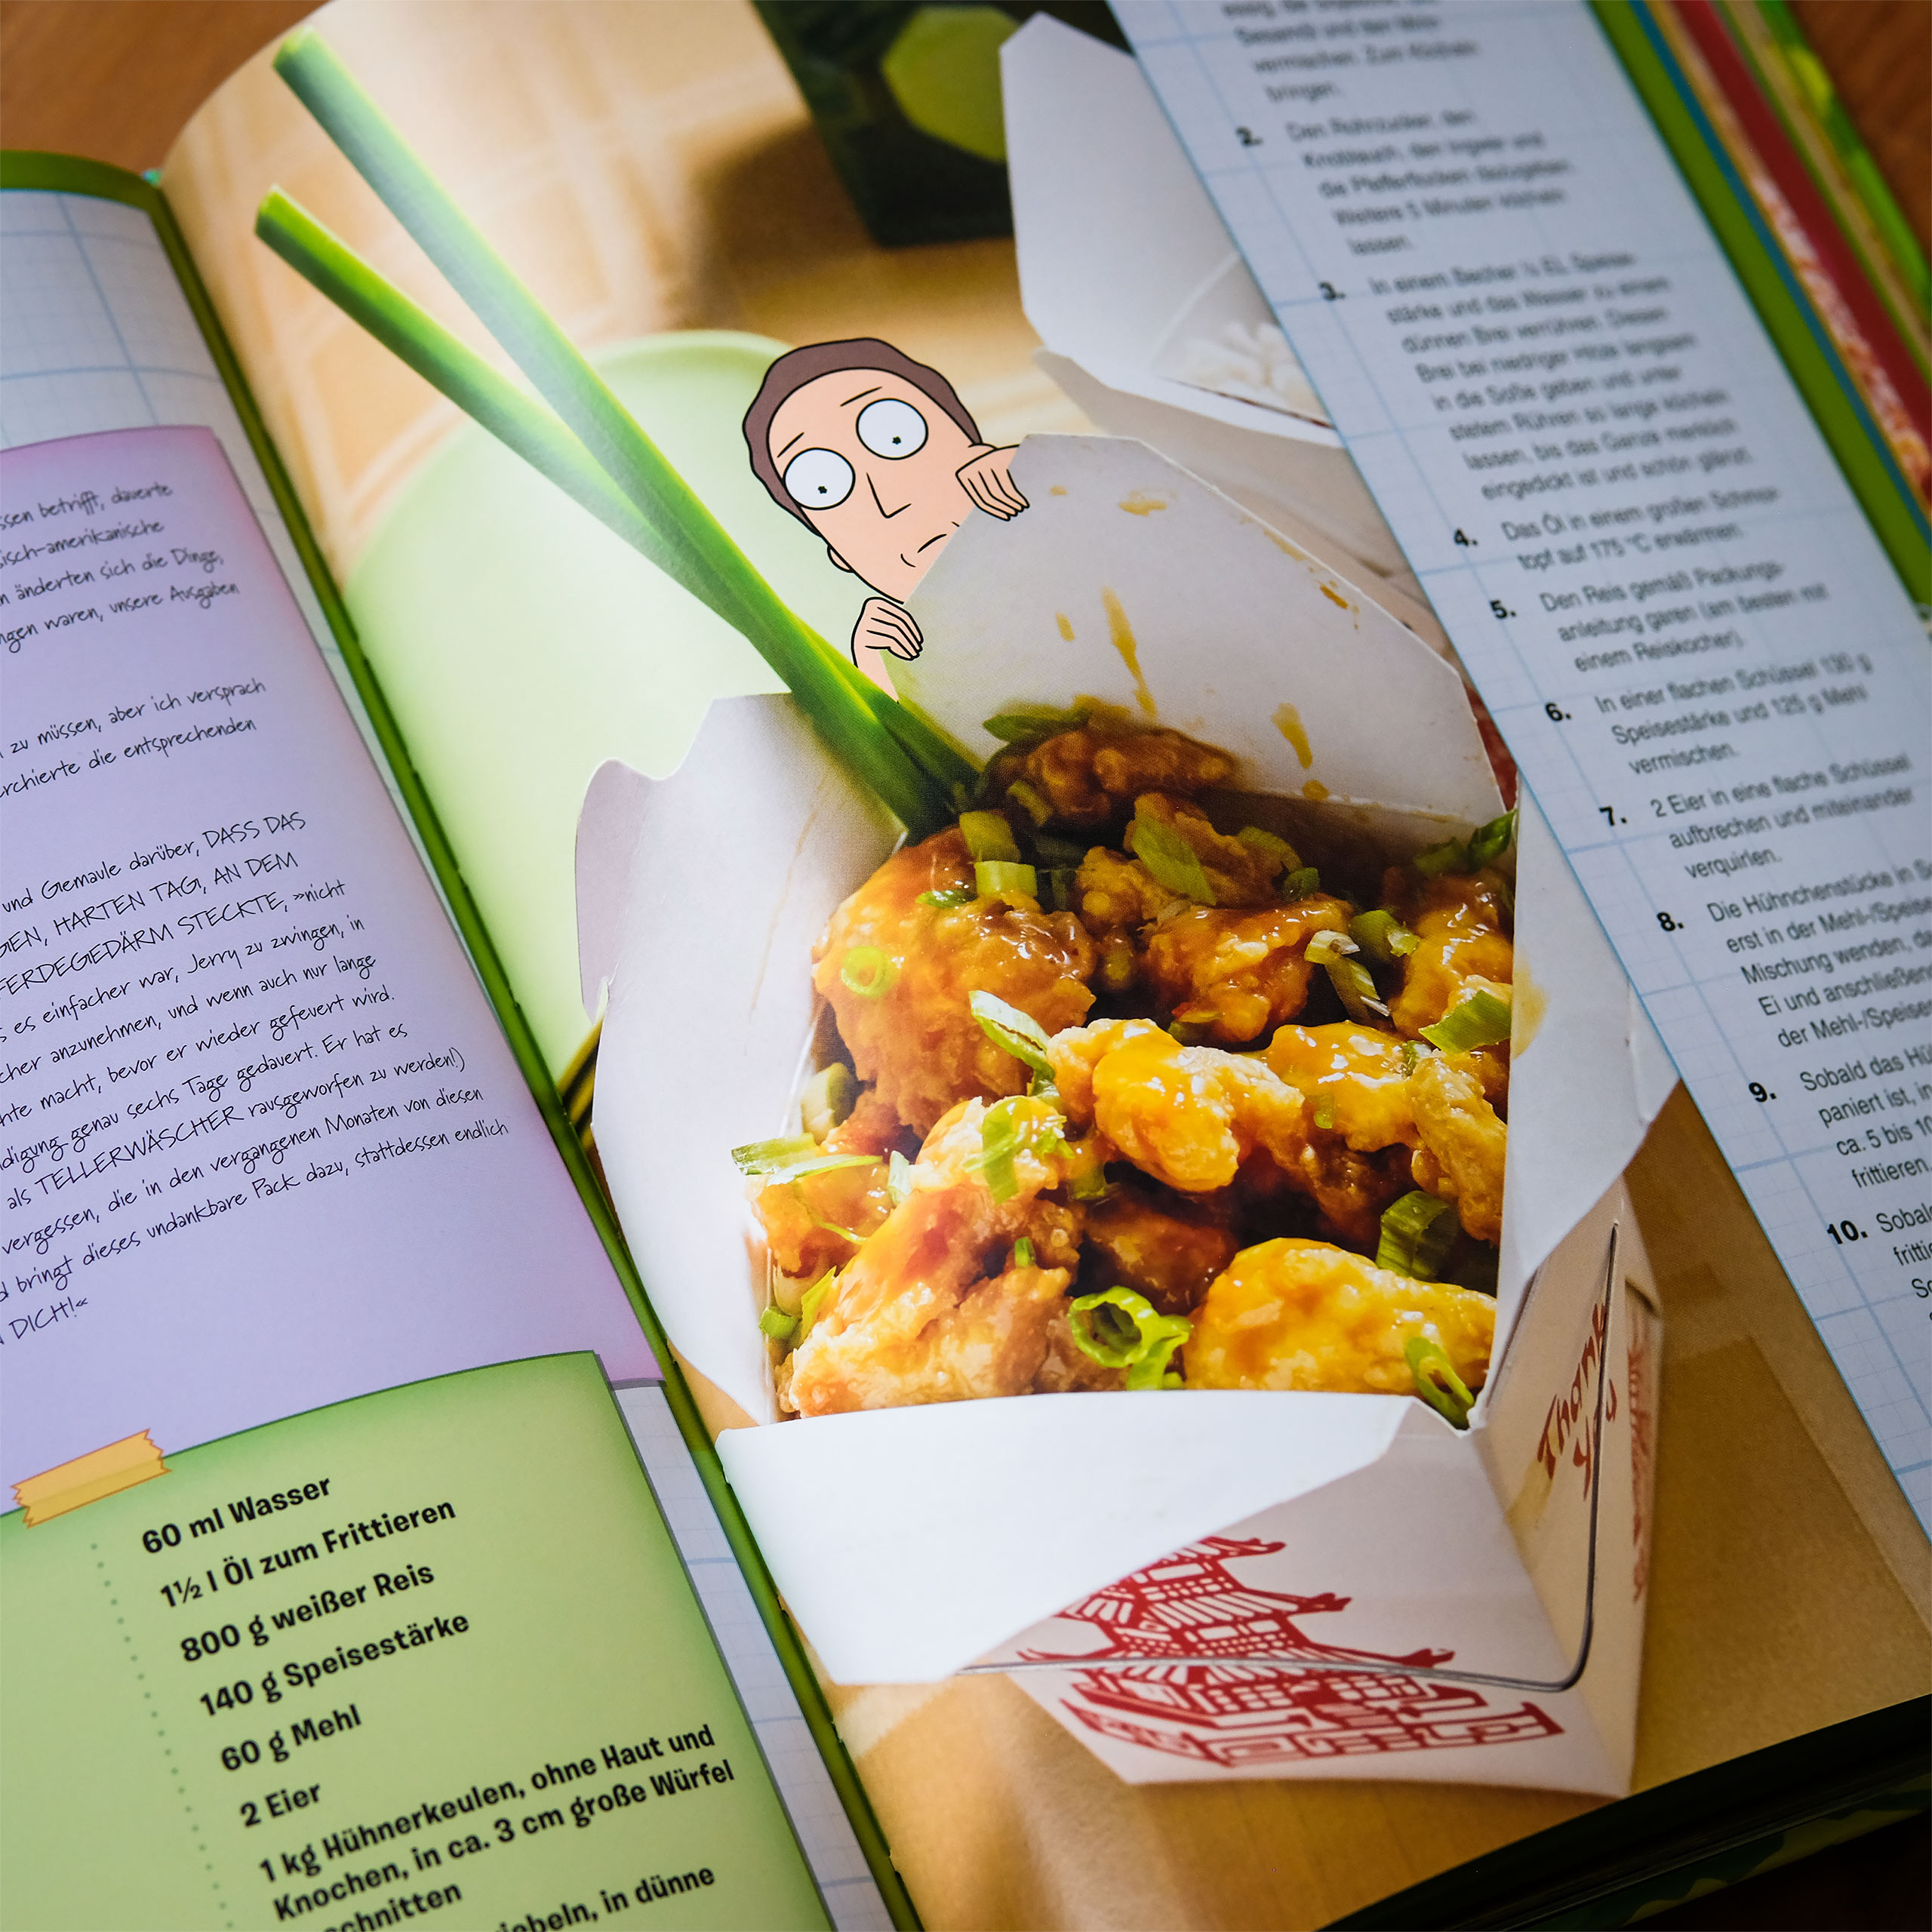 Rick and Morty - Het officiële kookboek